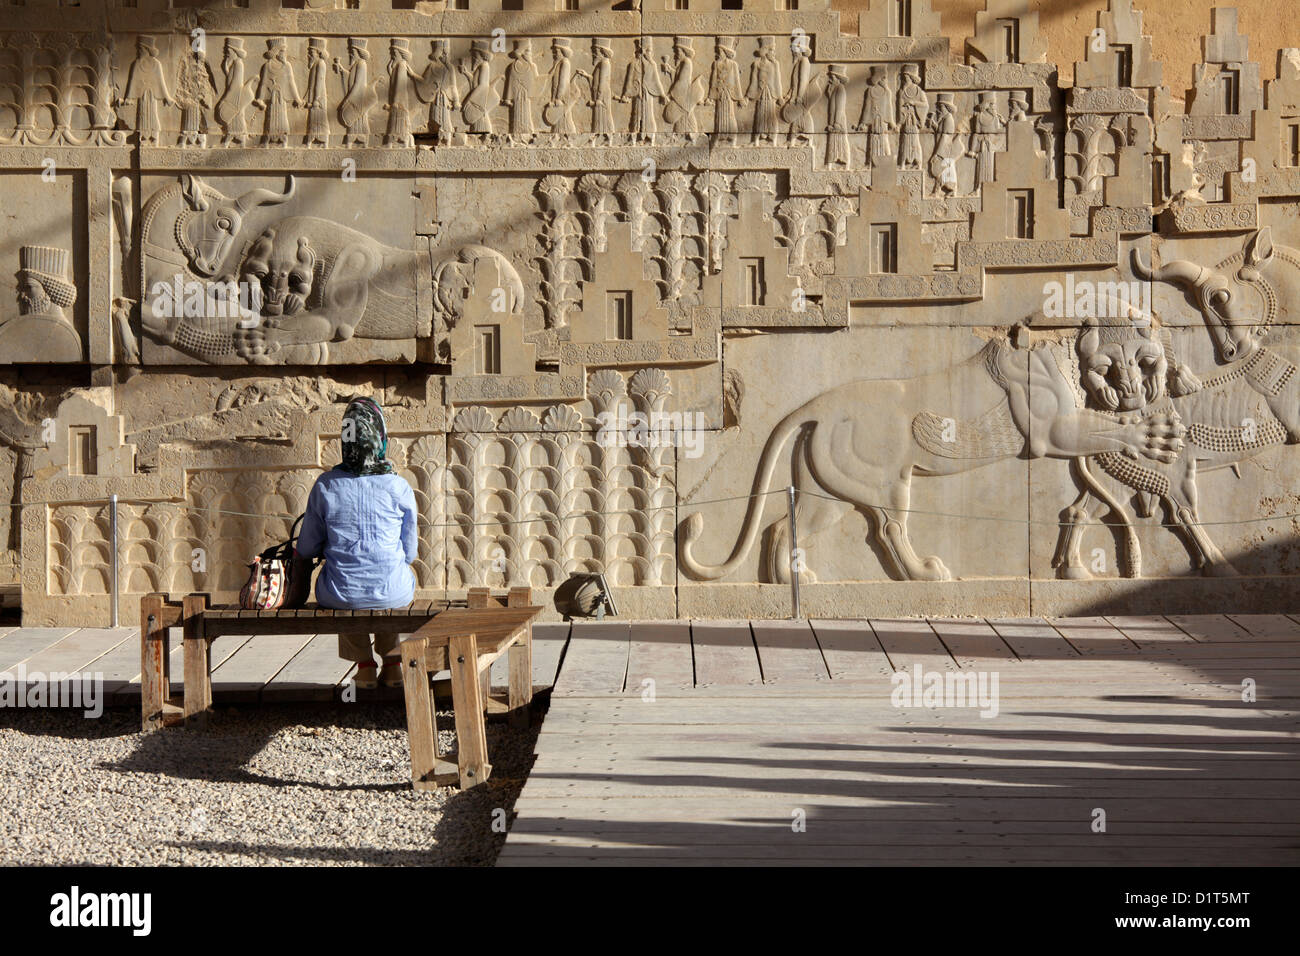 Apadana palace stairs, Persepolis, Iran Stock Photo